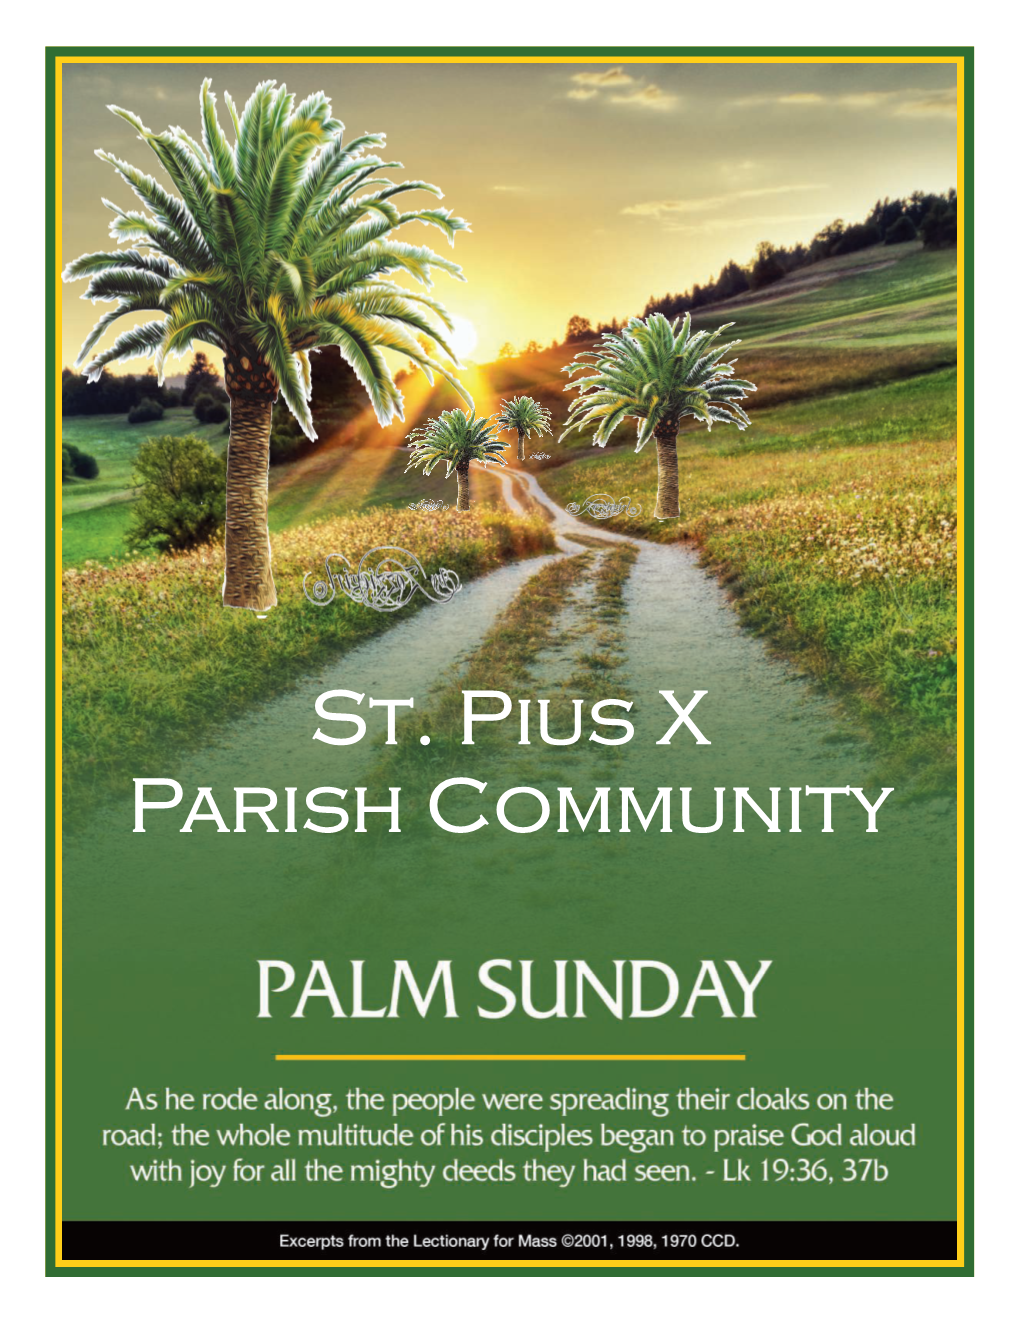 St. Pius X Parish Community